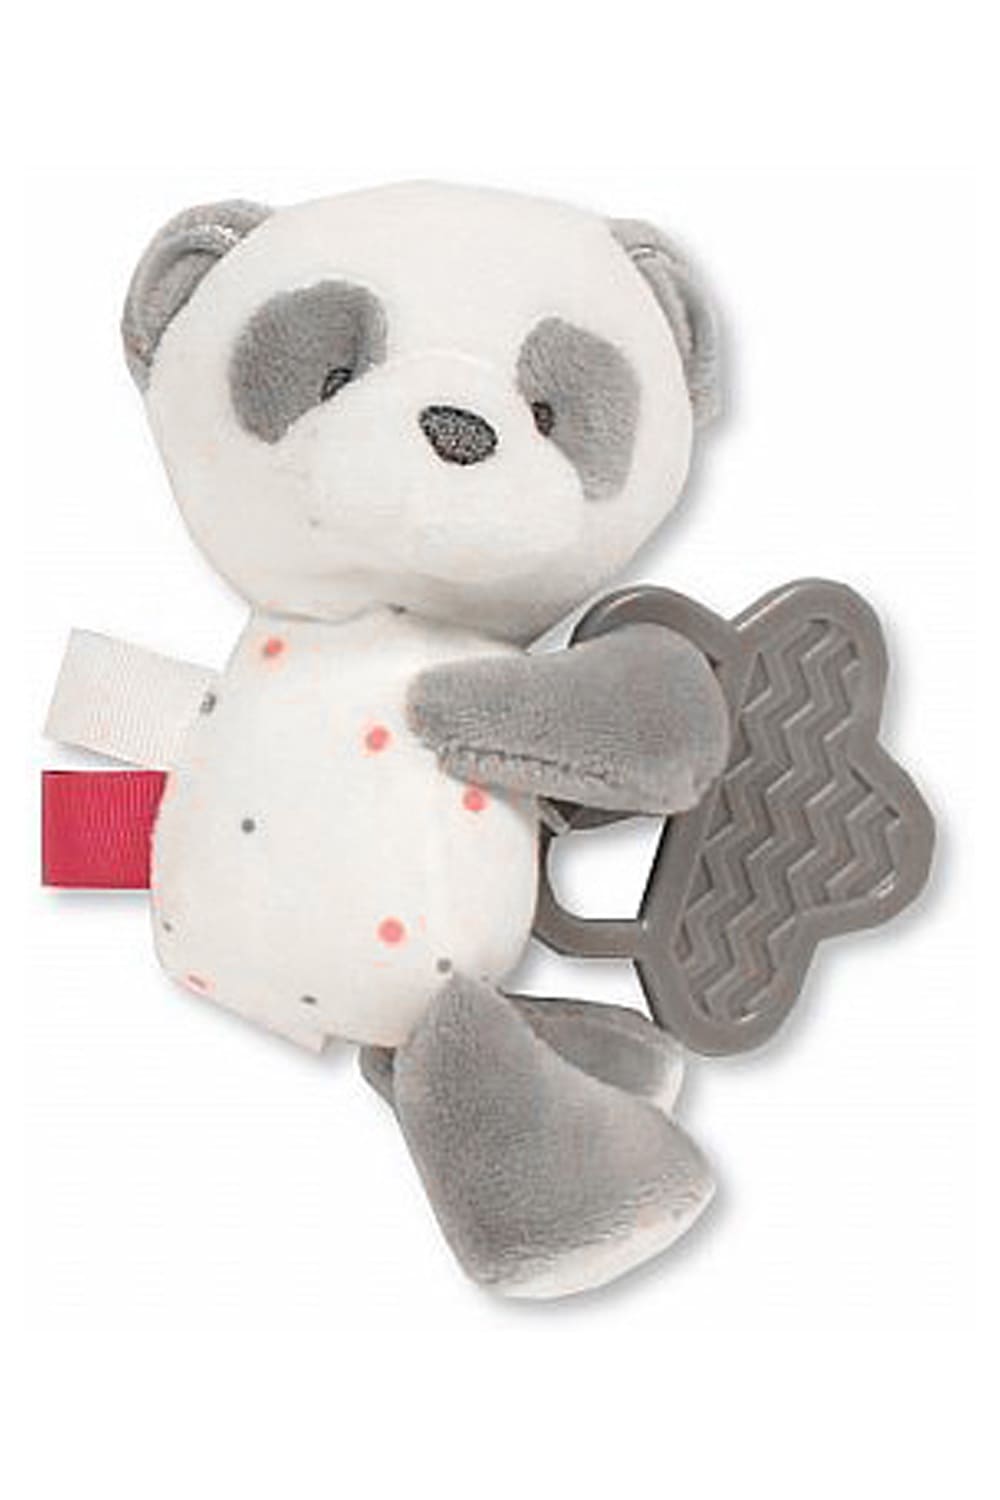 Dieses Babyspielzeug ist ein tolles und praktisches Geschenk fuer Babys. Das Pluesch Spielzeug dient auch als Beisshilfe fuer das zahnende Baby. Der Panda ist in der Farbe rot/rosa erhaeltlich. Ein suesses Geschenk zur Geburt.